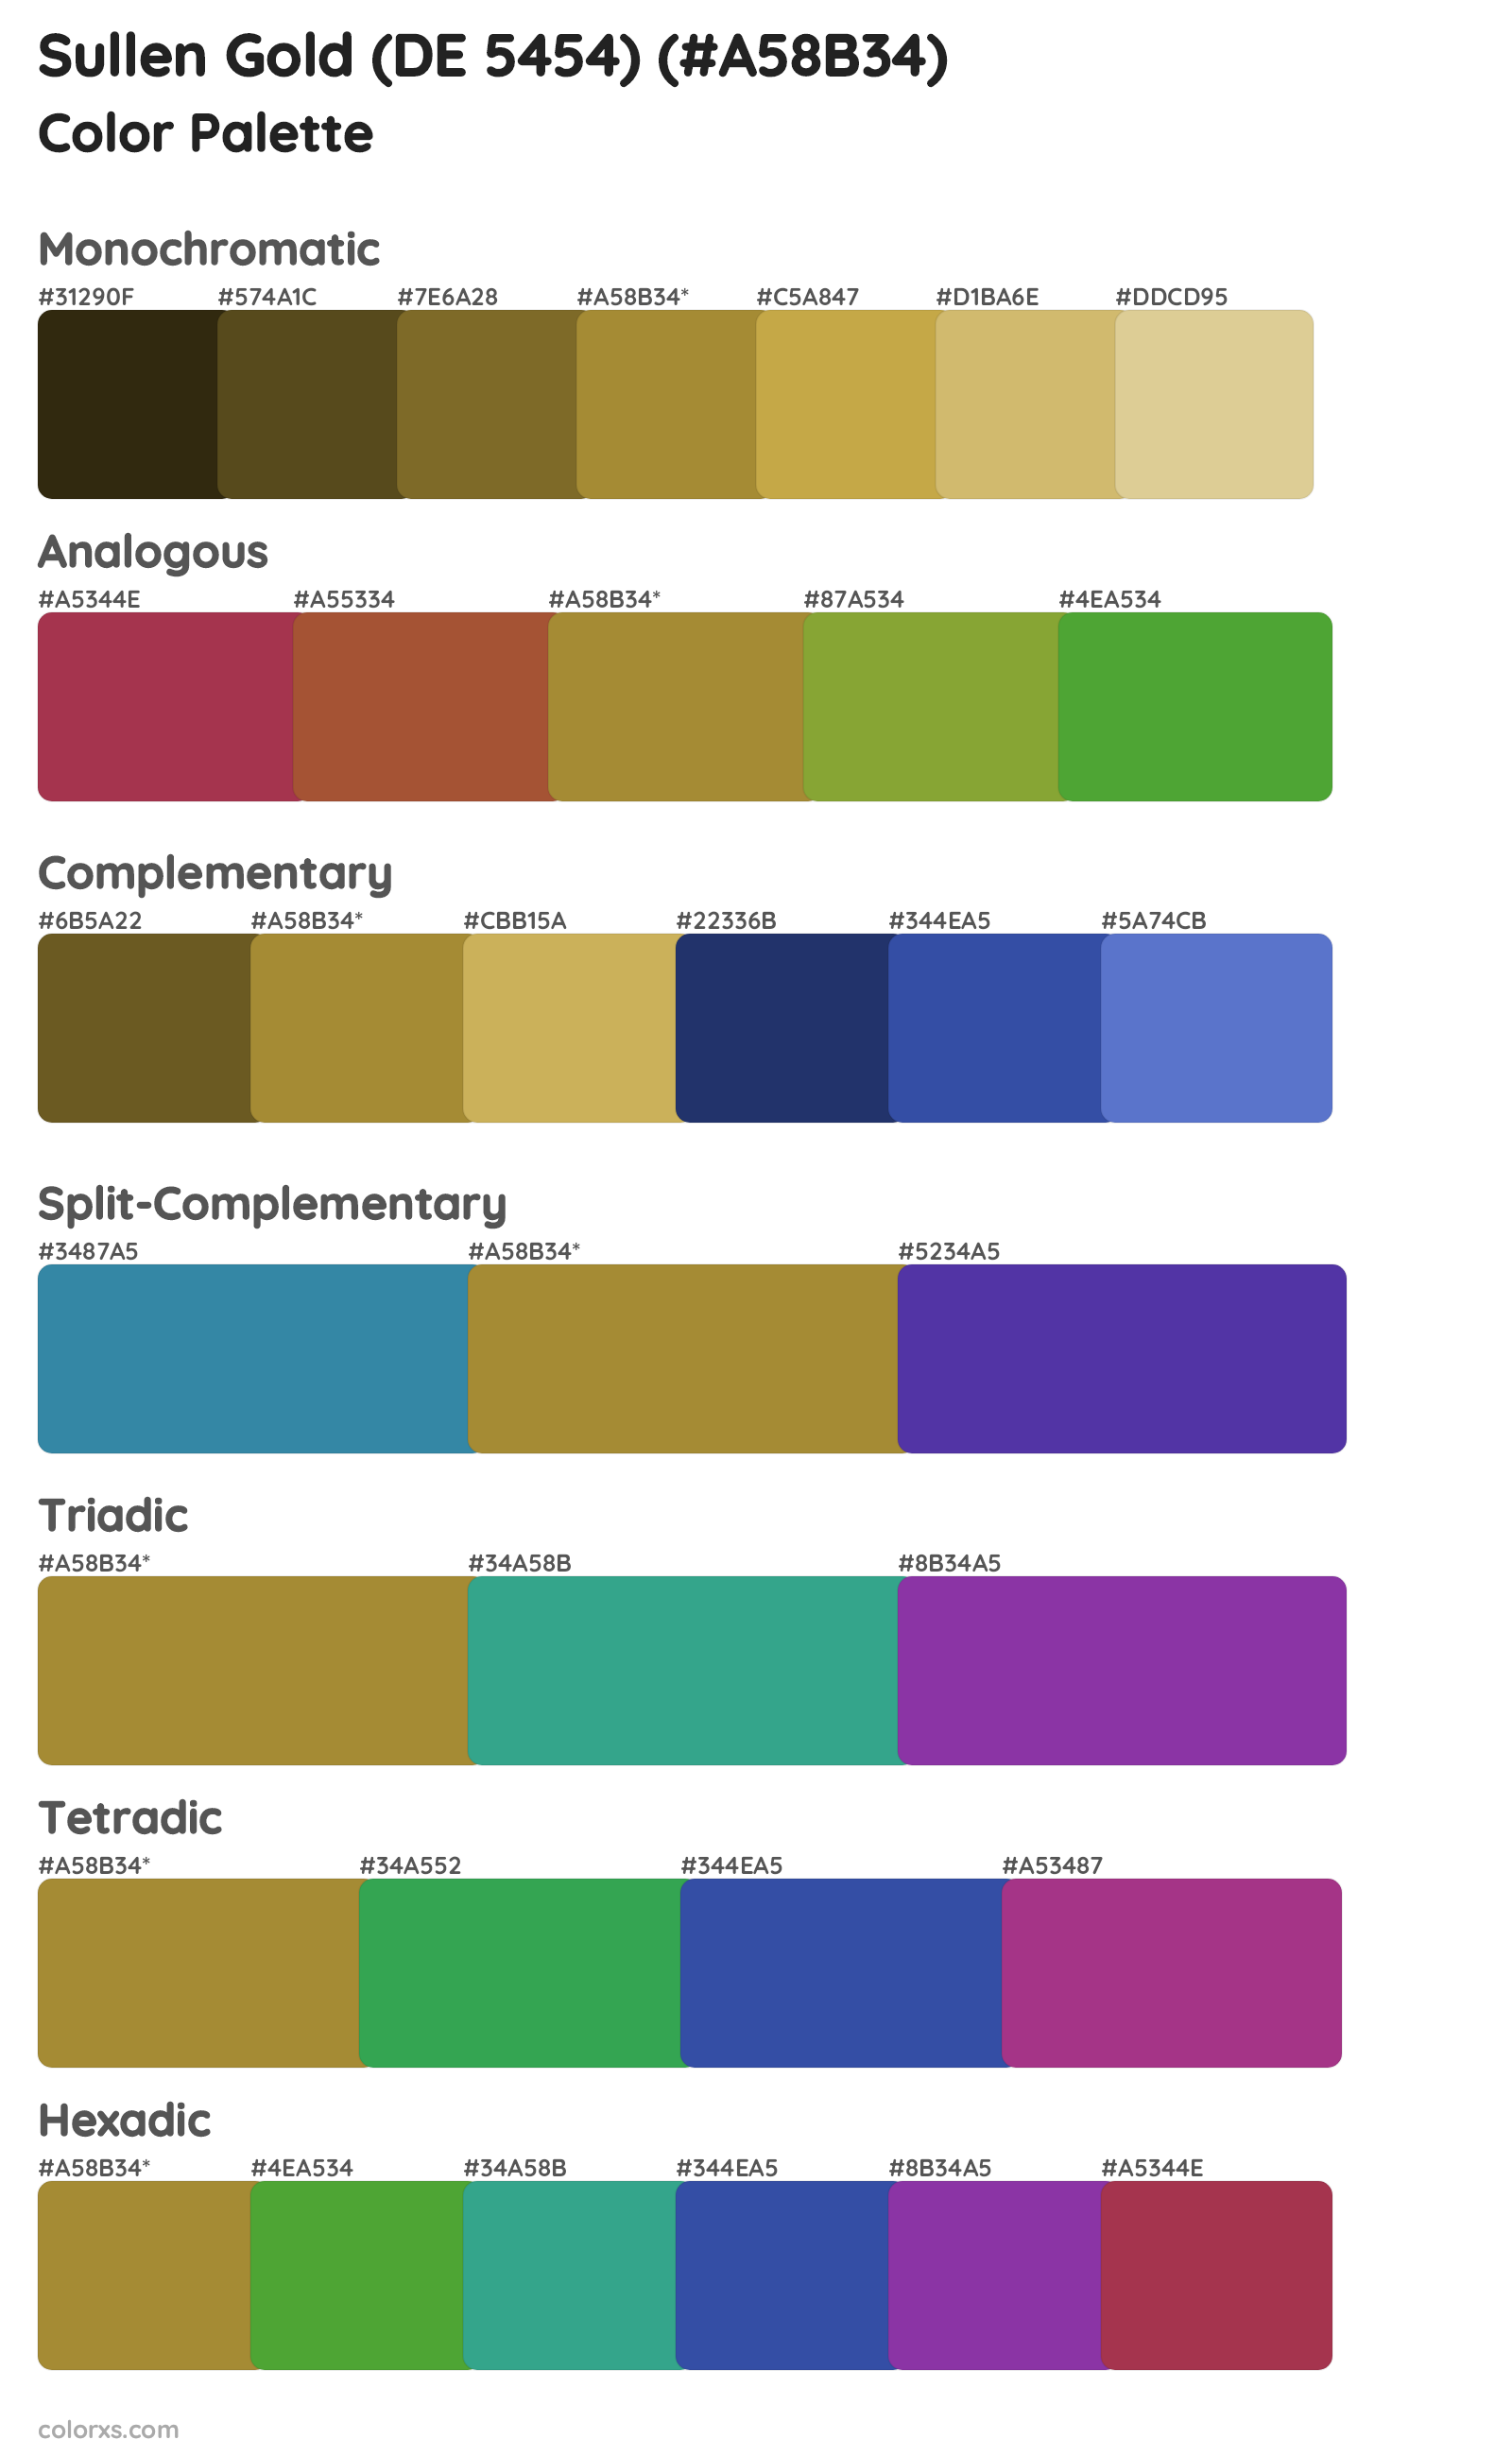 Sullen Gold (DE 5454) Color Scheme Palettes